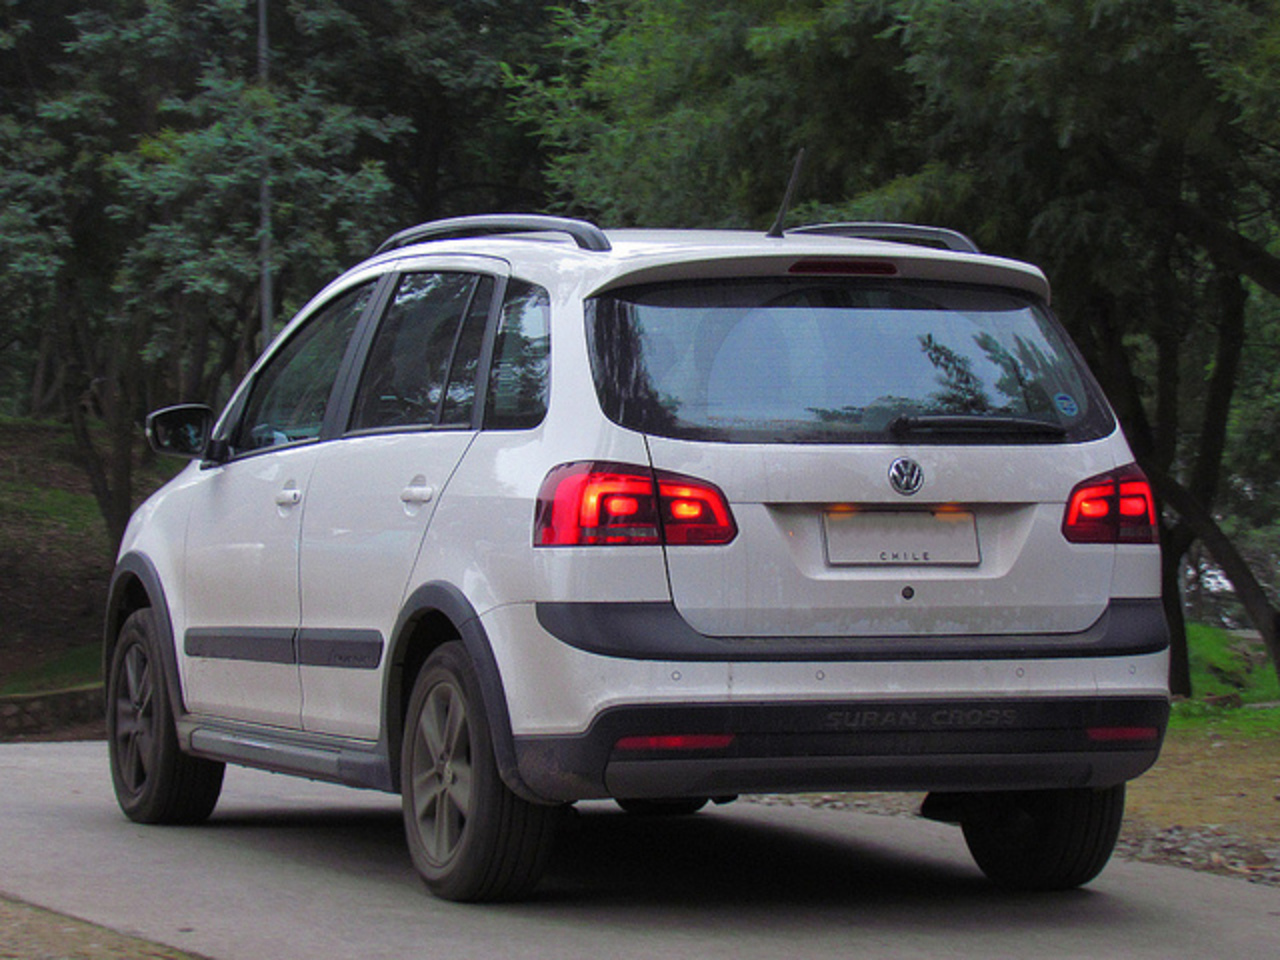 Volkswagen Suran Cross 1.6 2012 | Flickr - Photo Sharing!